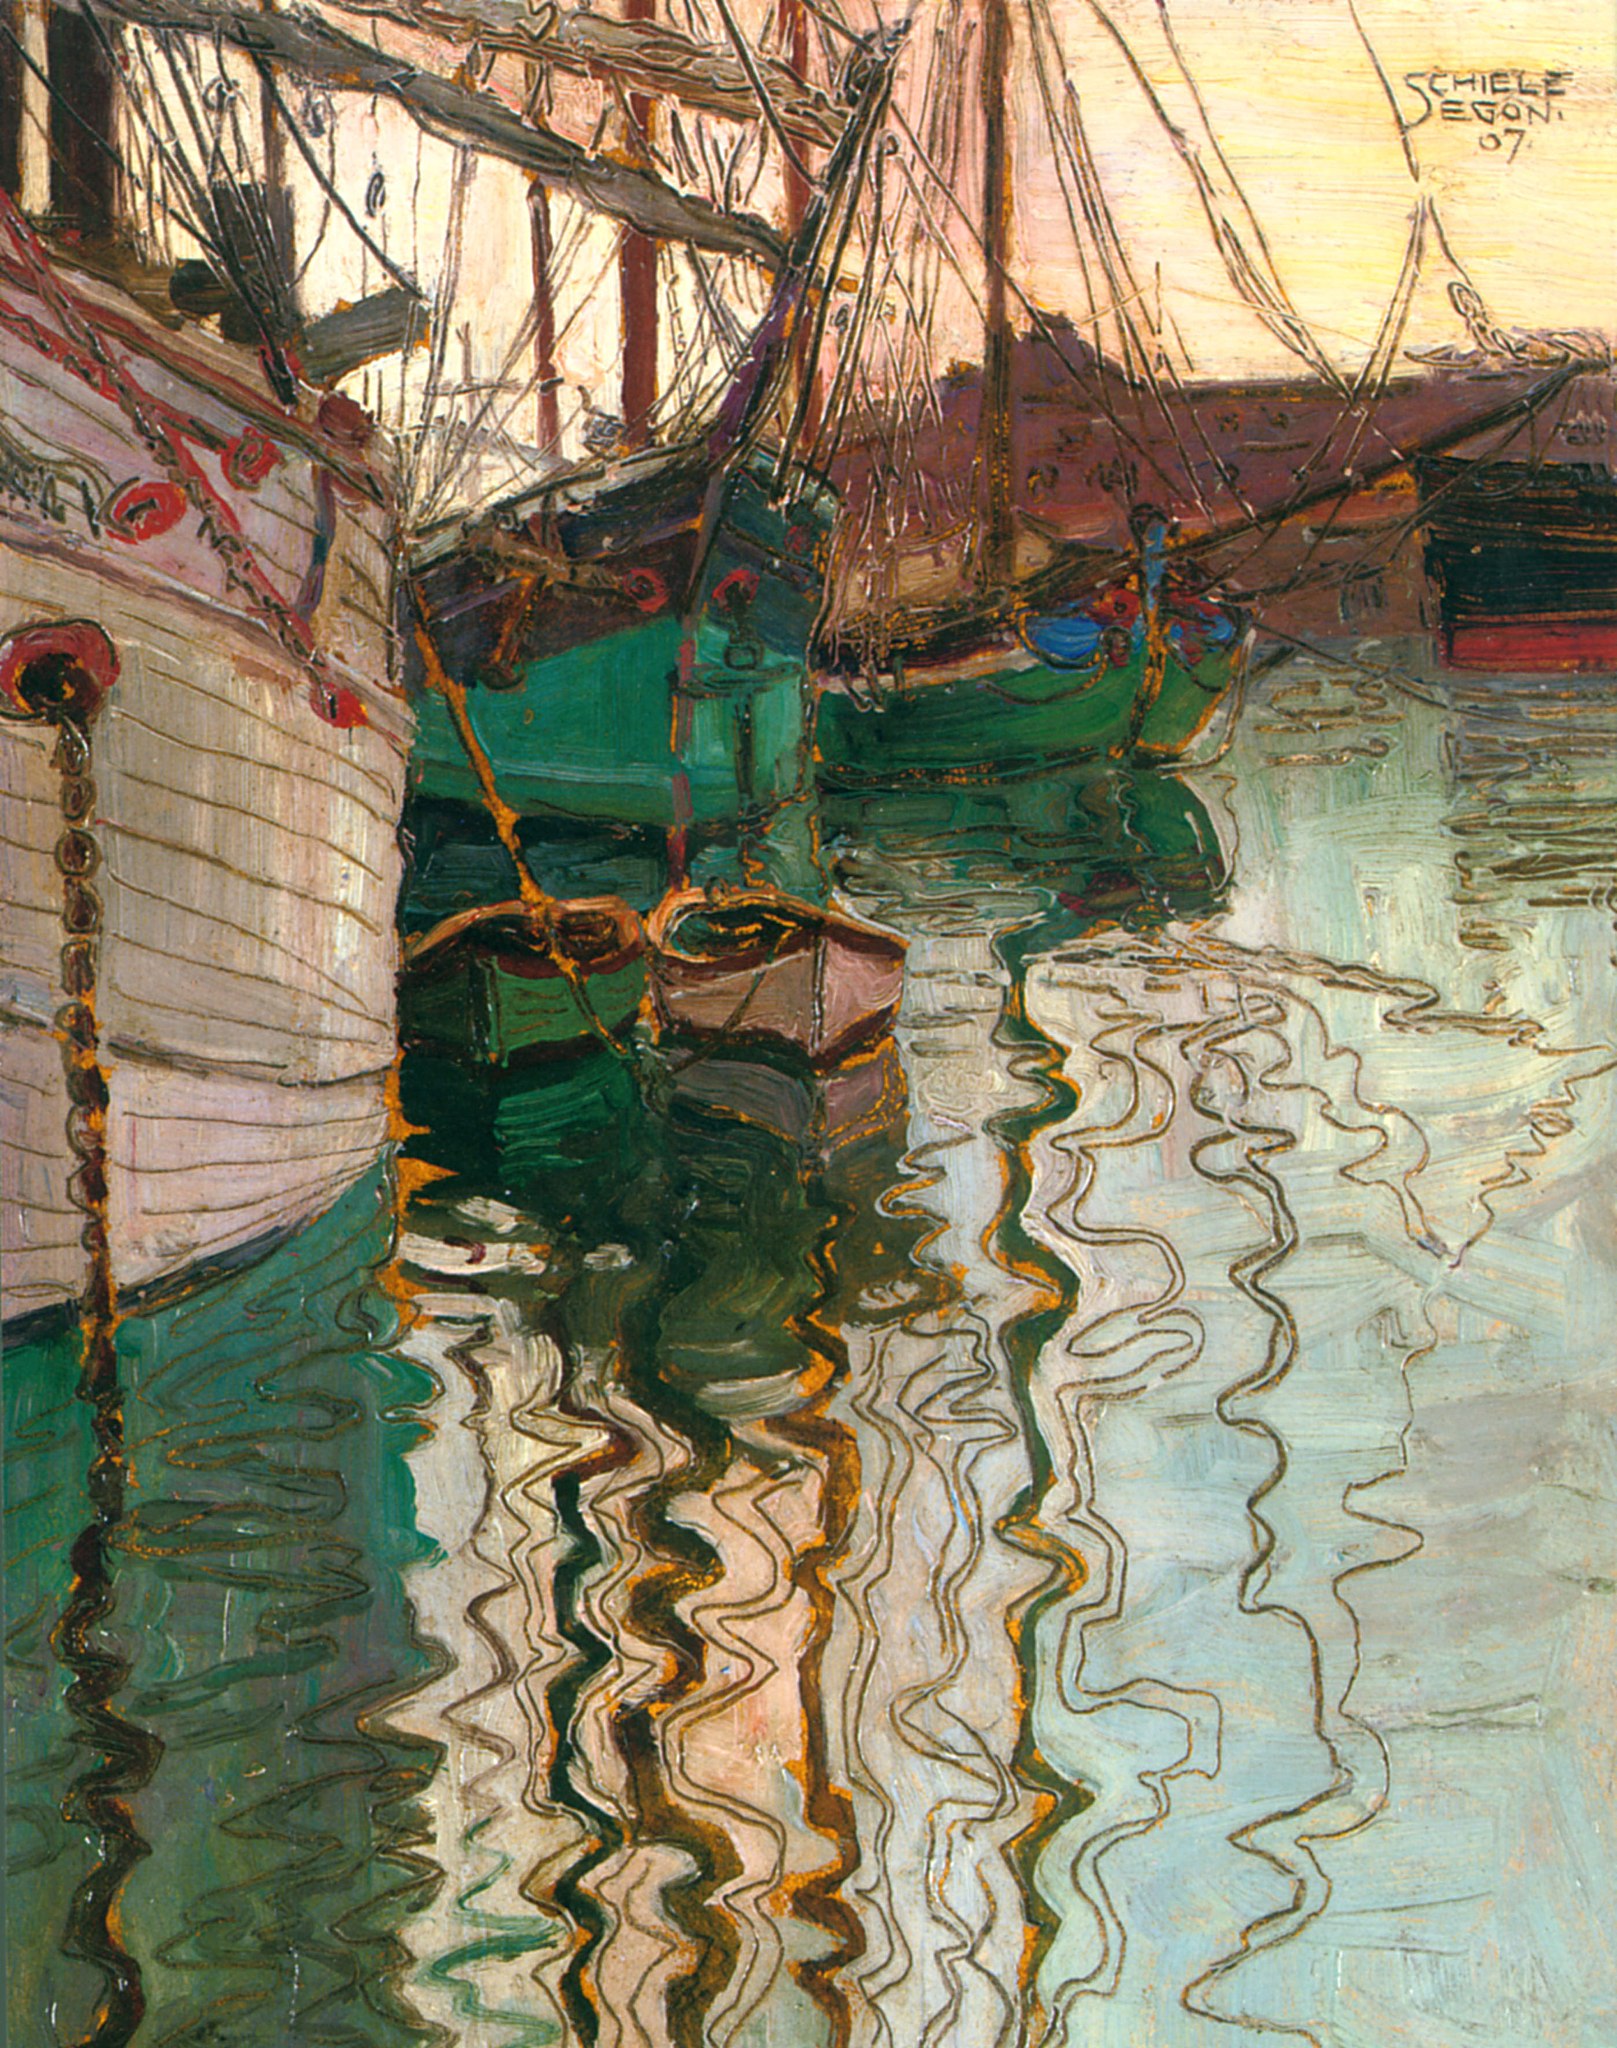 Puerto de Trieste by Egon Schiele - 1907 - 24.6 x 18 cm Colección privada